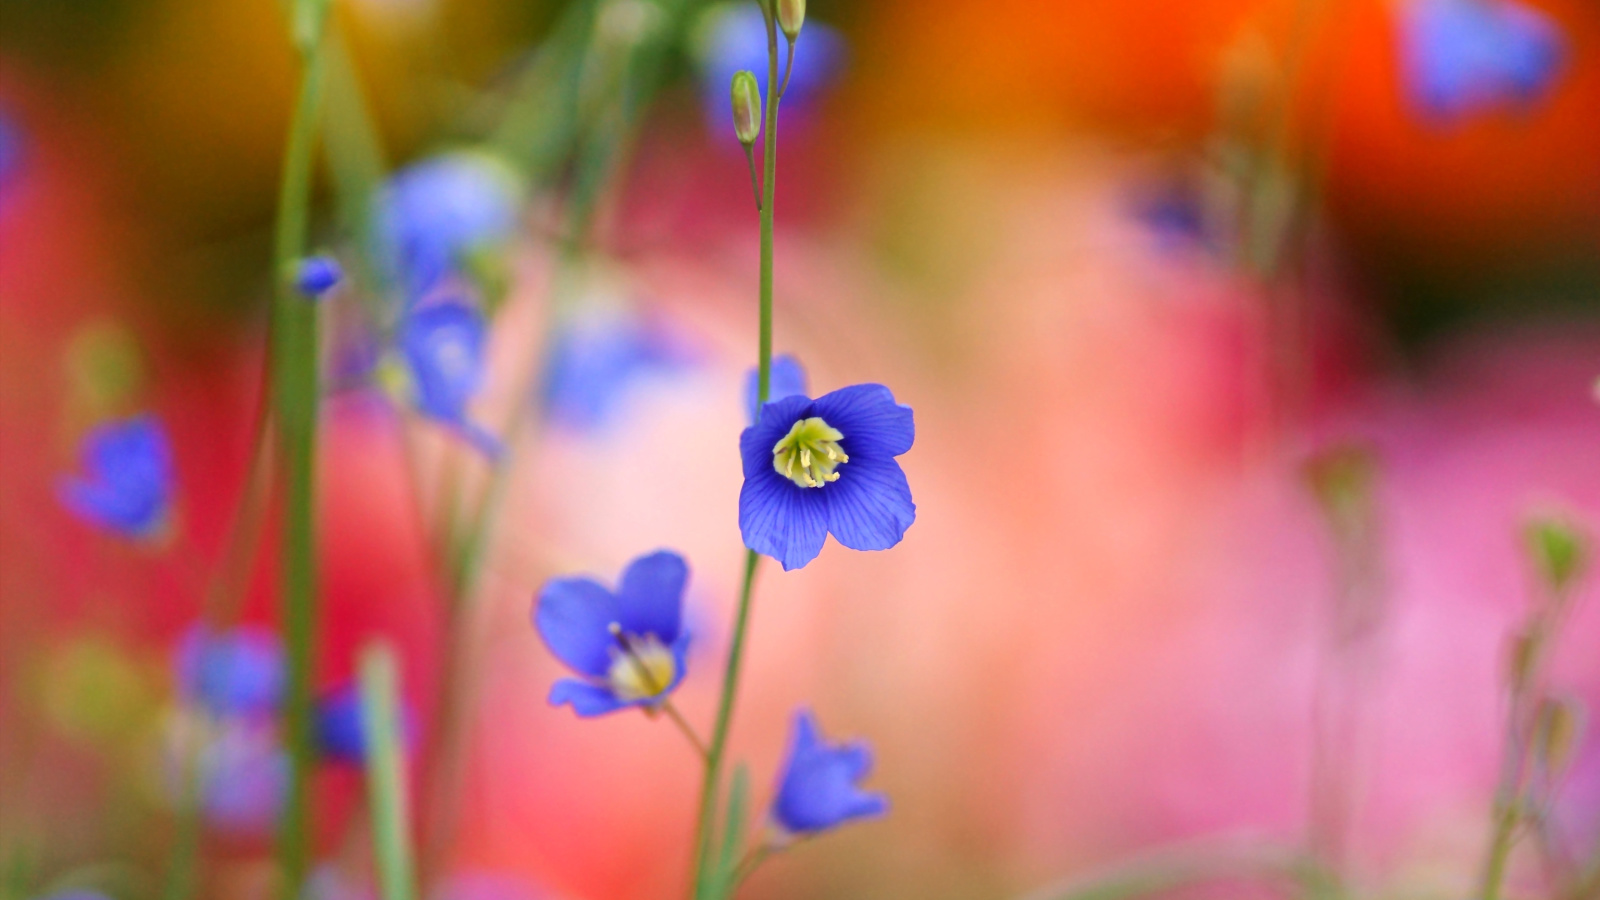 Sfondi Blurred flowers 1600x900